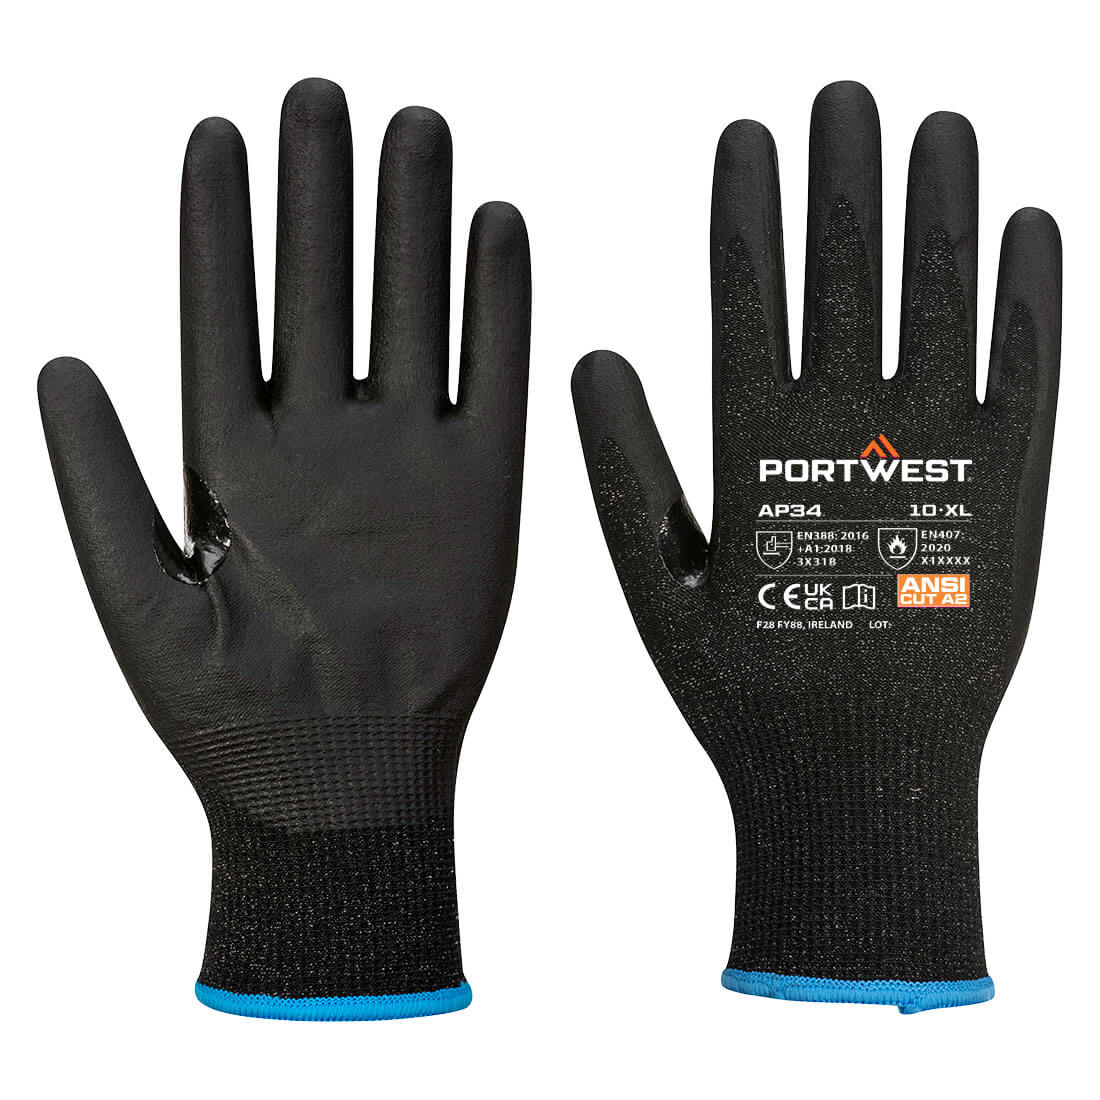 LR15 Nitrile Foam Touchscreen Glove (Pk12)  (AP34)